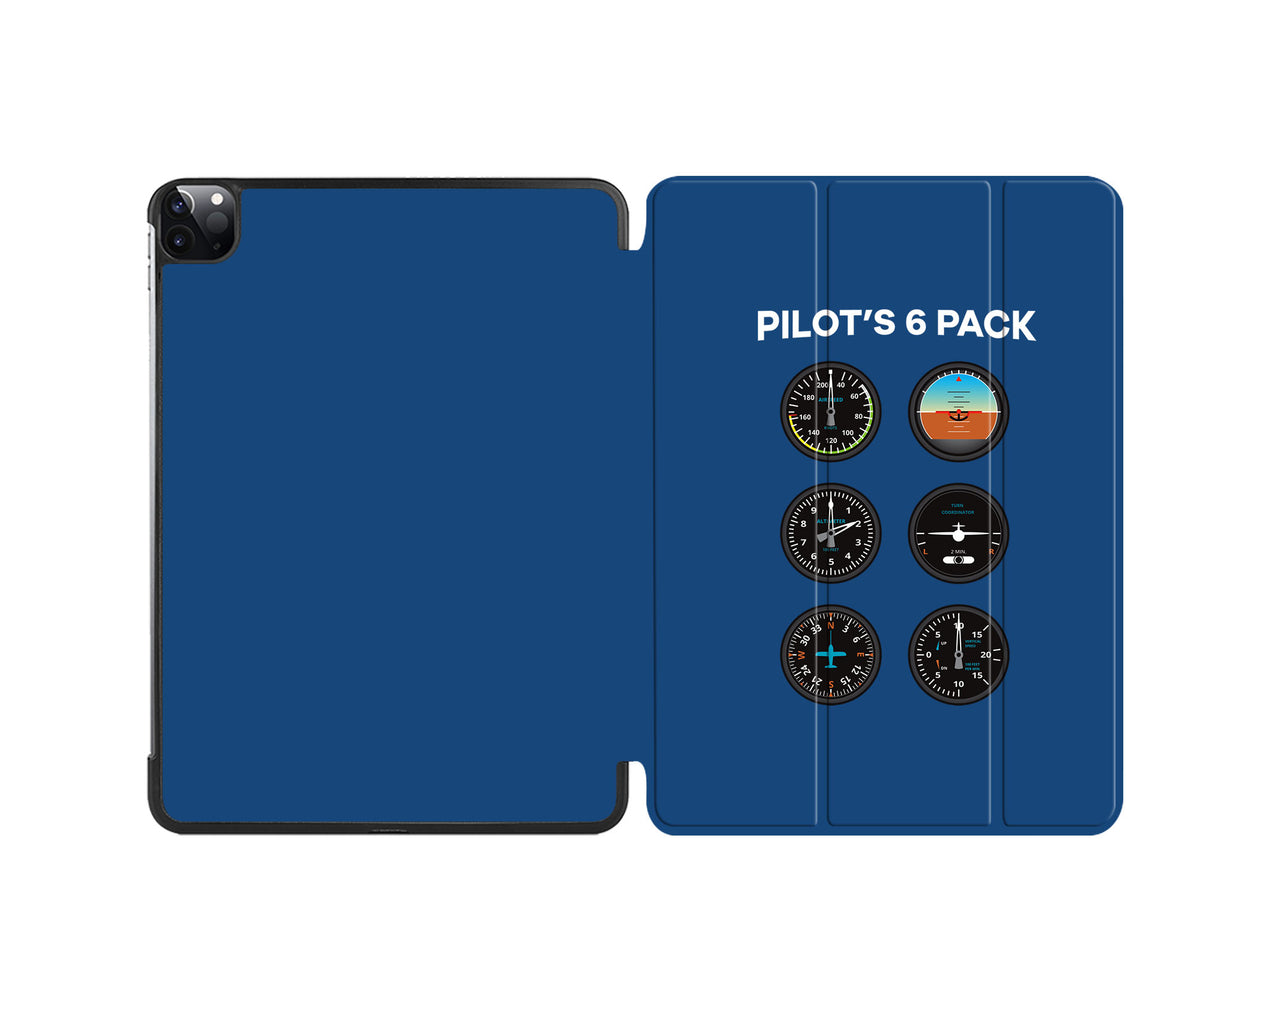 Pilot's 6 Pack Designed iPad Cases